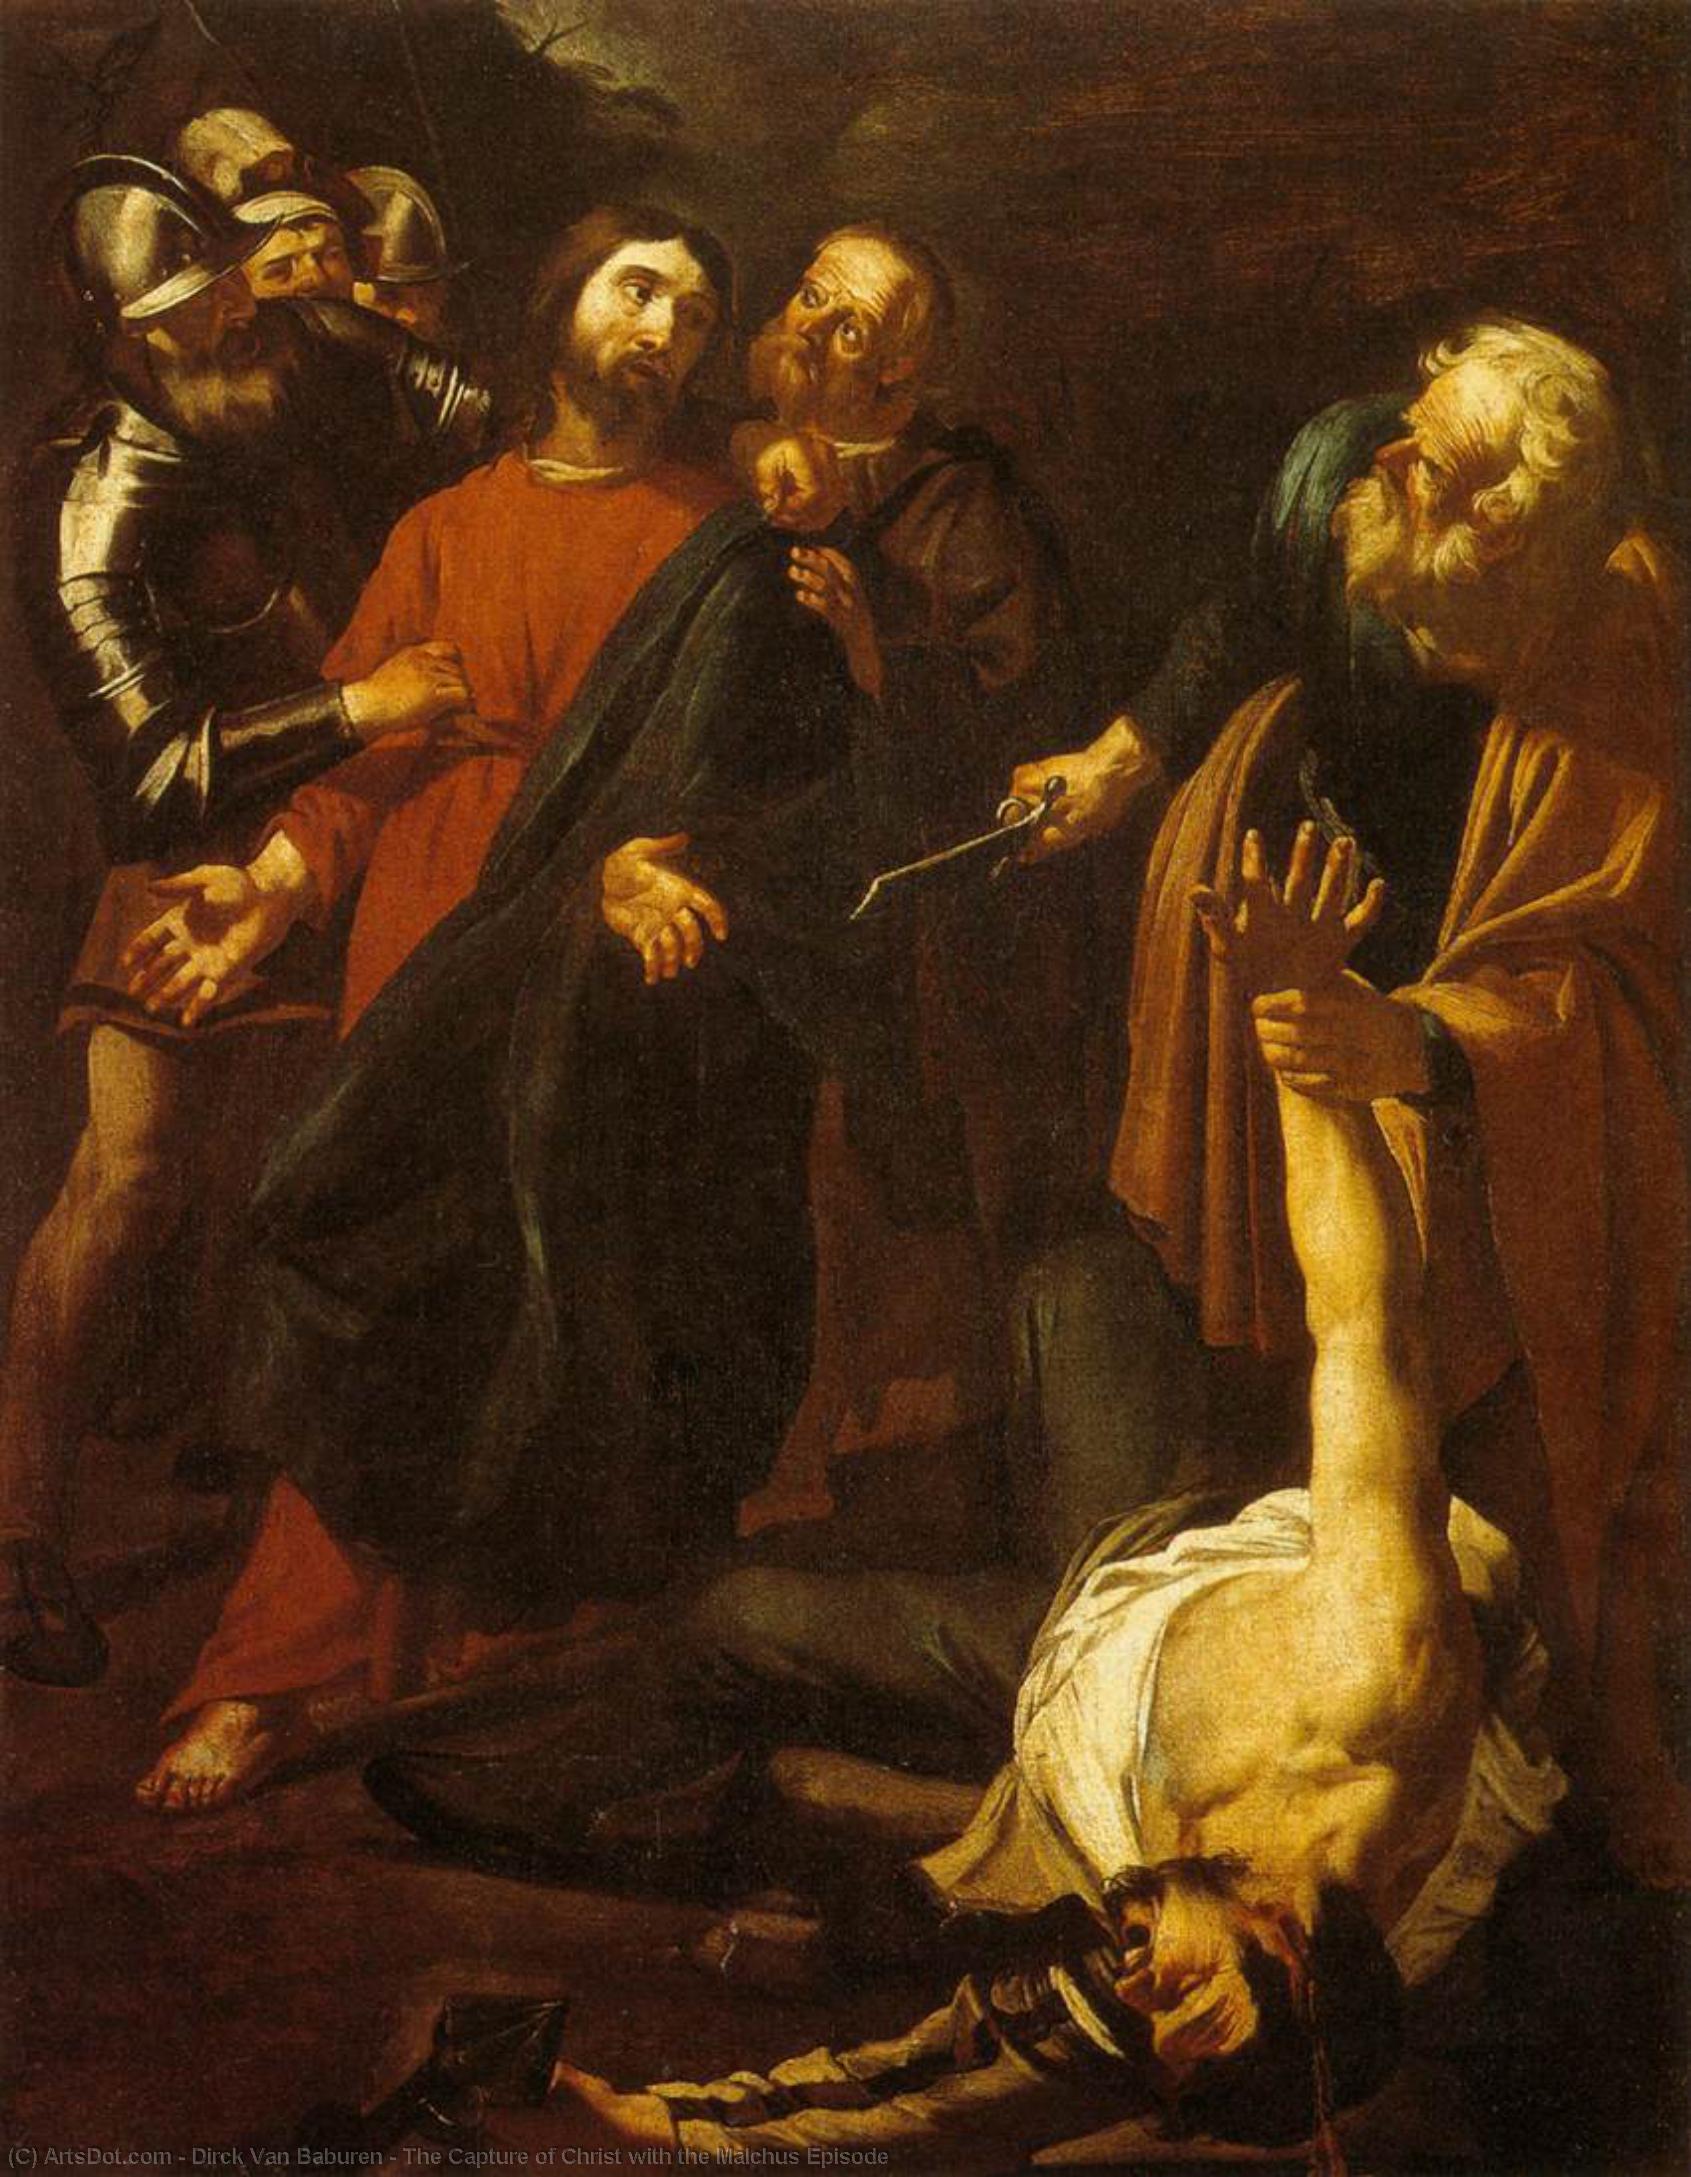 WikiOO.org - Encyclopedia of Fine Arts - Malba, Artwork Dirck Van Baburen - The Capture of Christ with the Malchus Episode